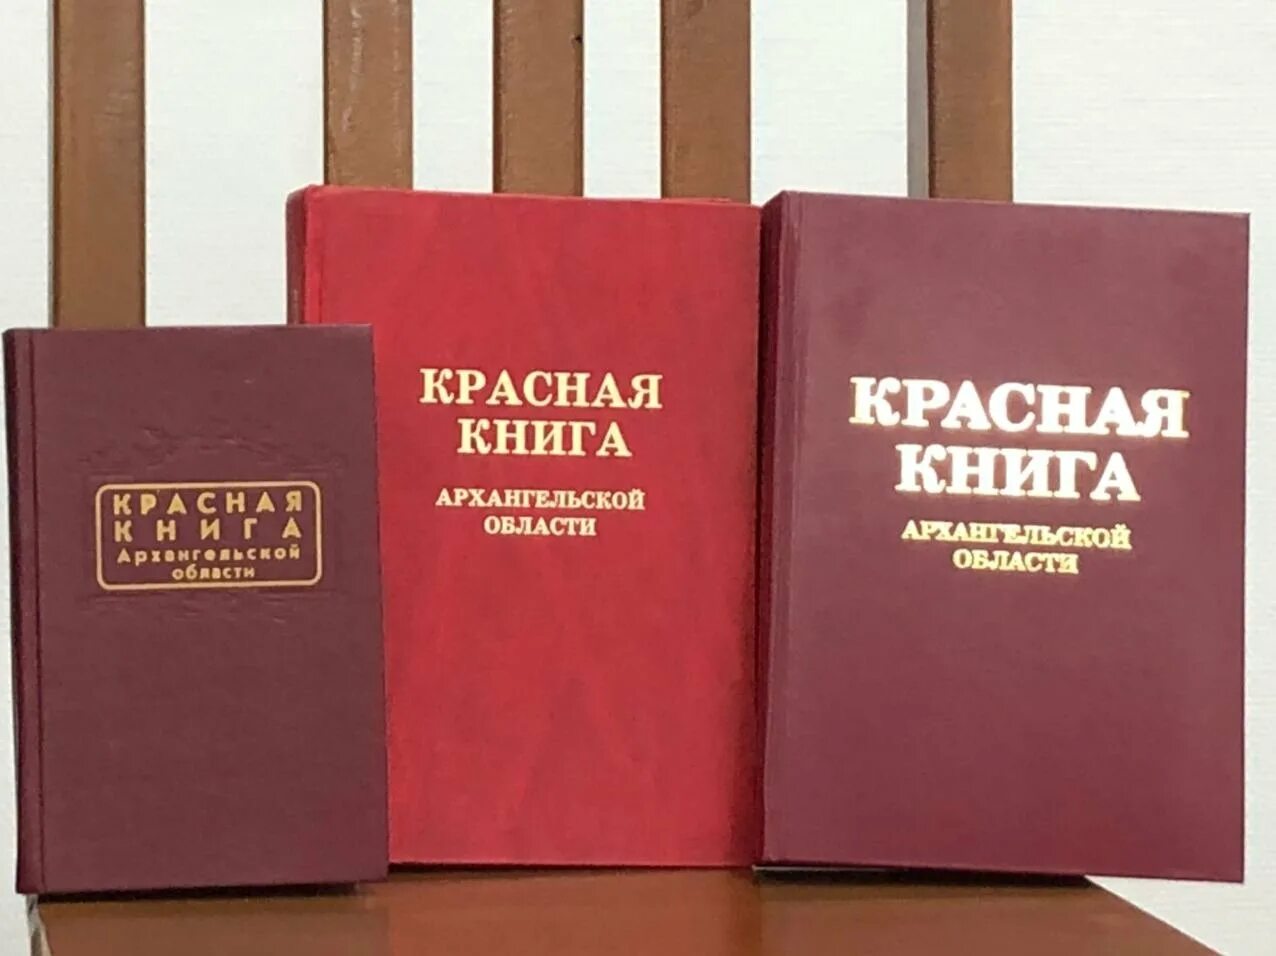 Великая красная книга. Красная книга. Krassnaya kniqa. Красная книга обложка. Виды красных книг.